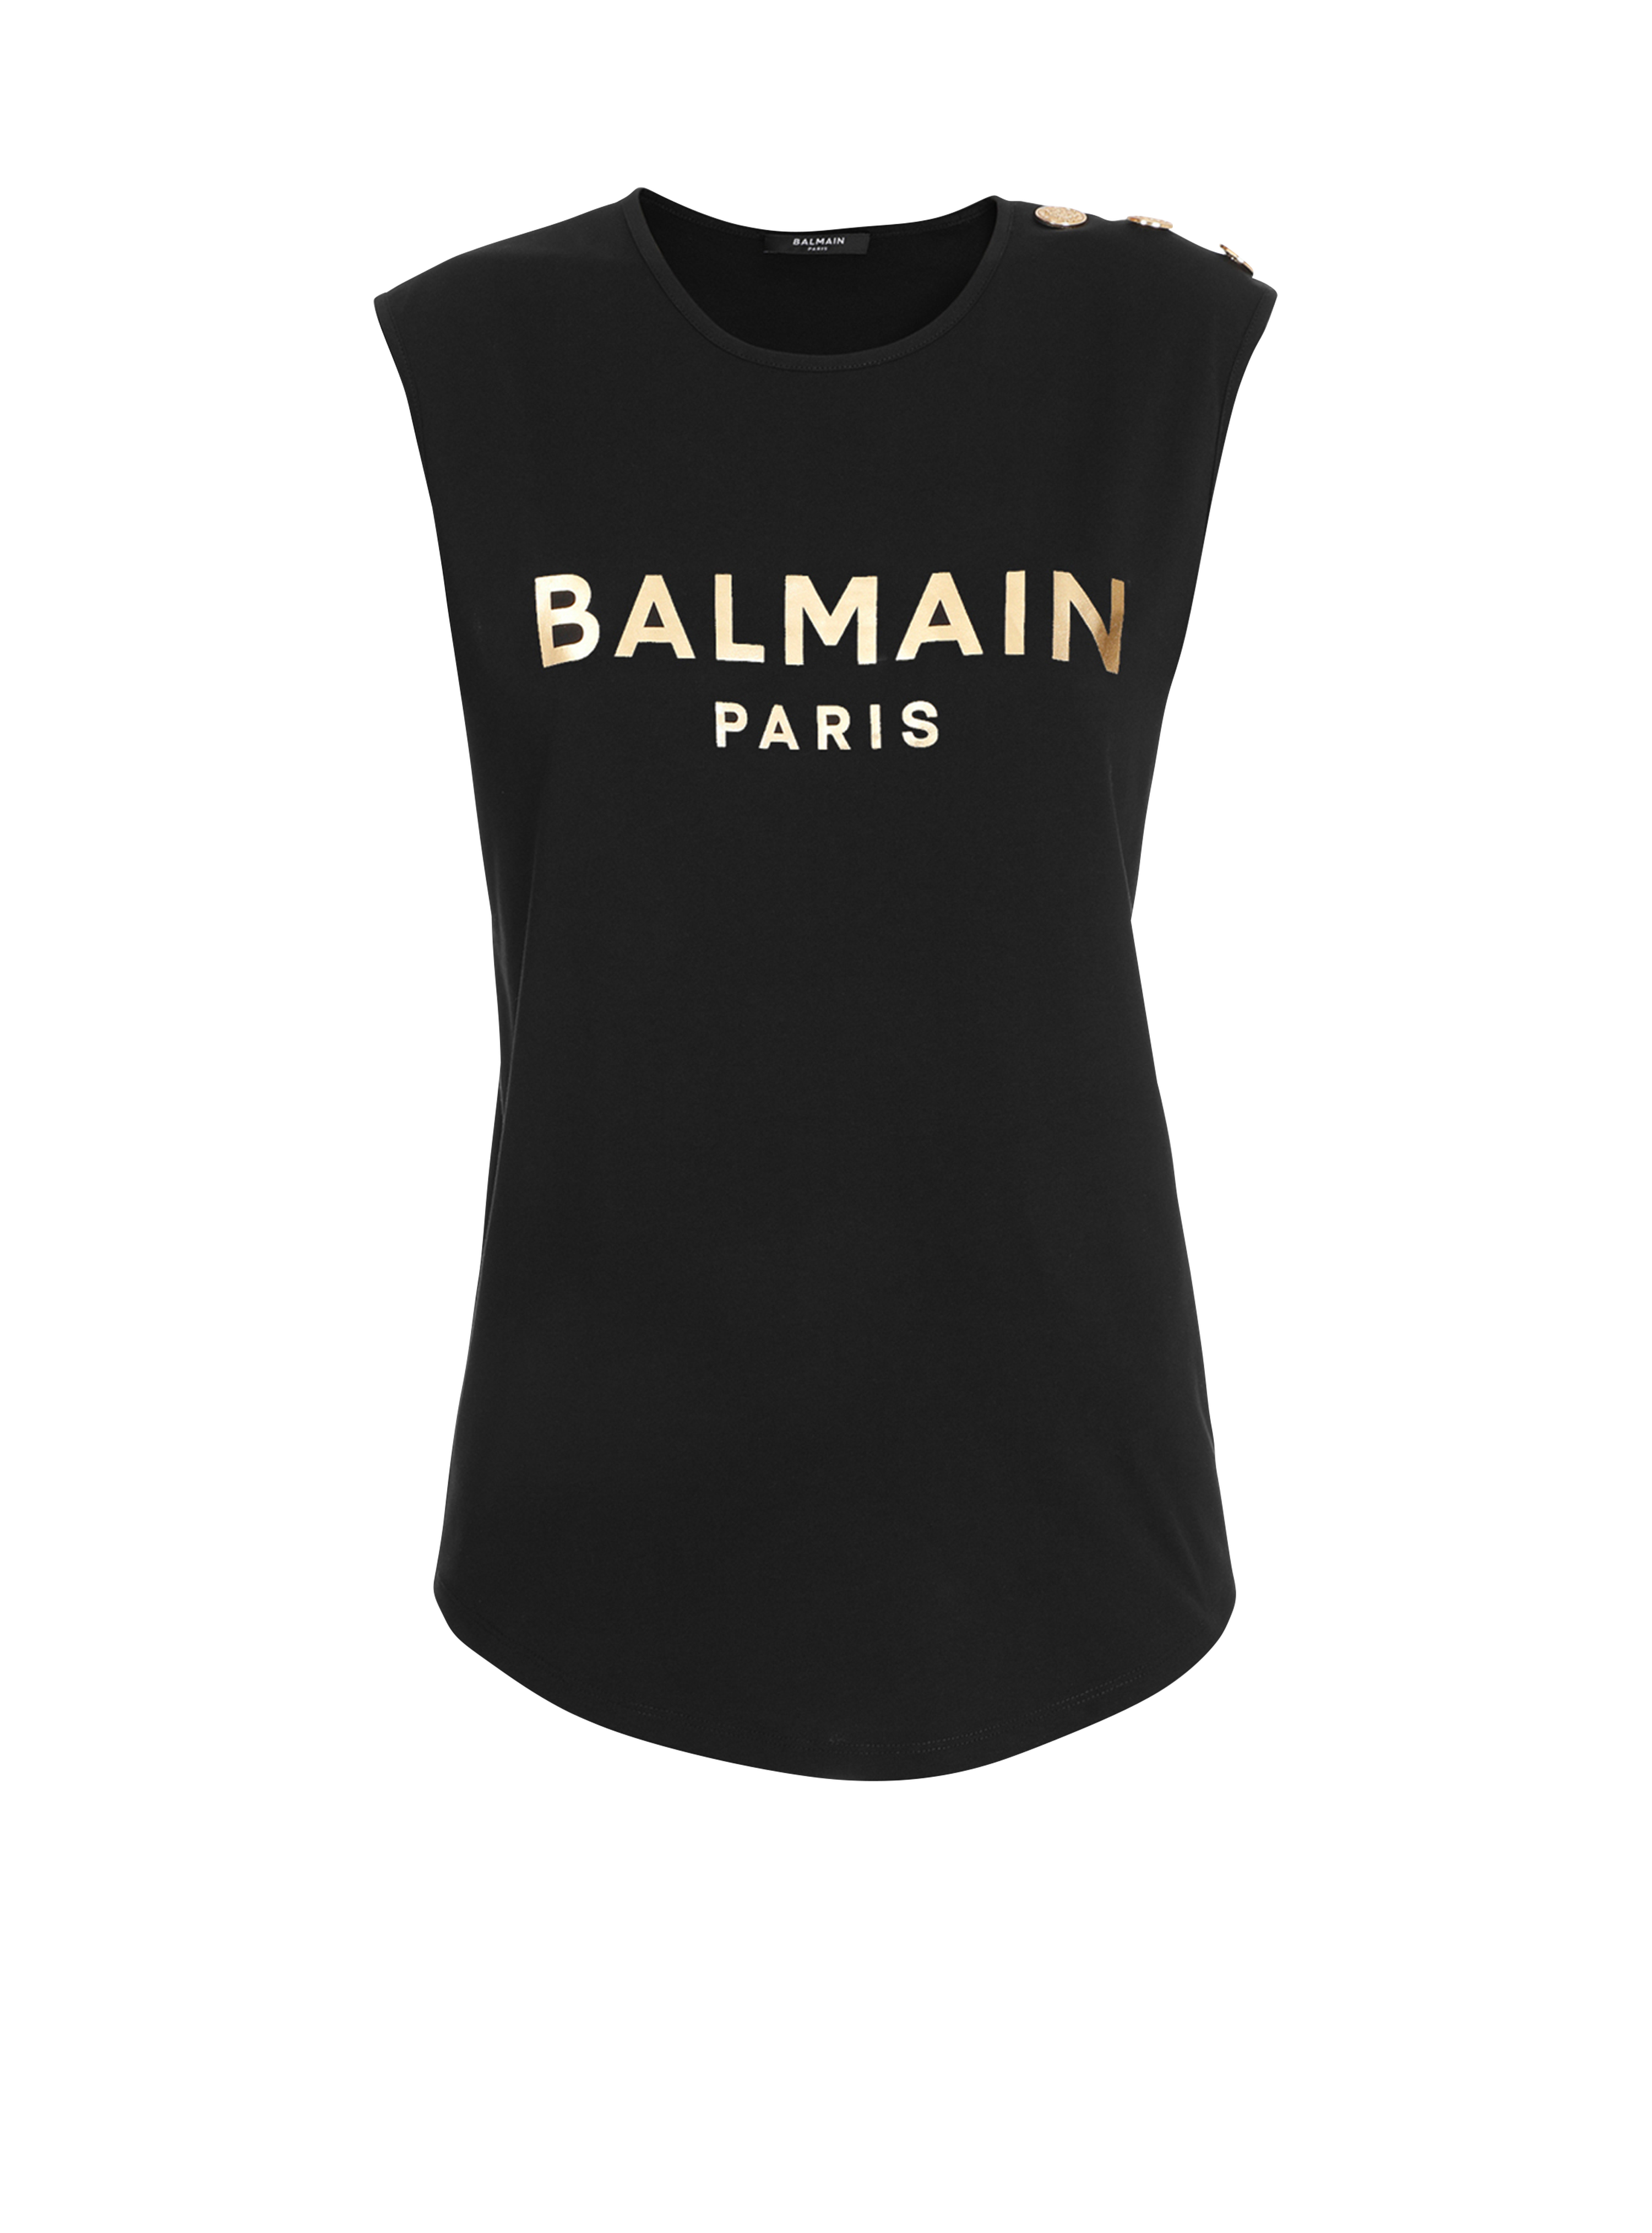 T-shirt en coton imprimé logo Balmain, or